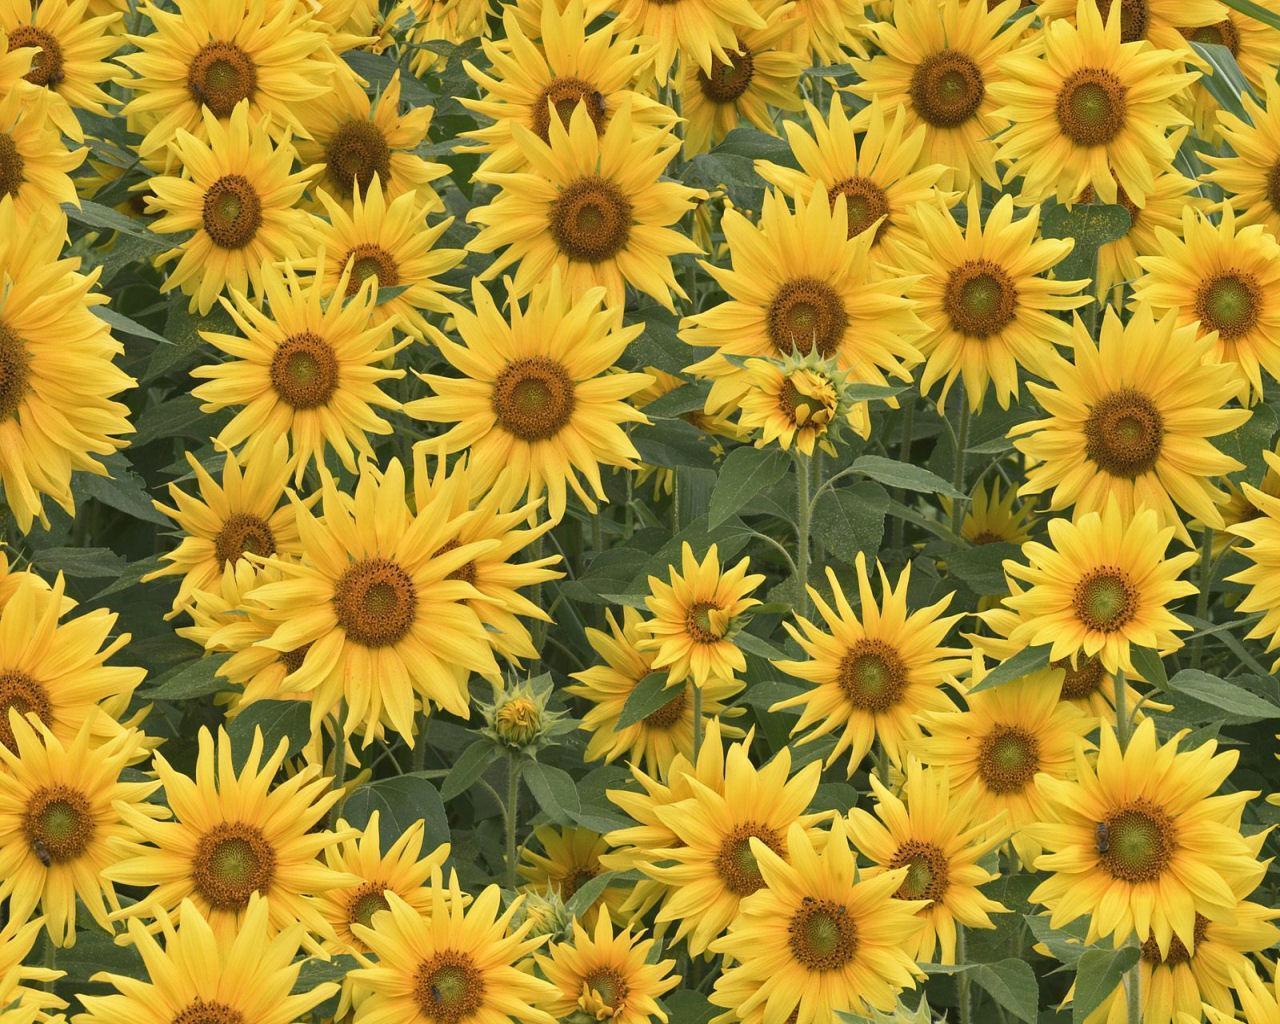 Sunflower Tumblr Backgrounds - wallpaper